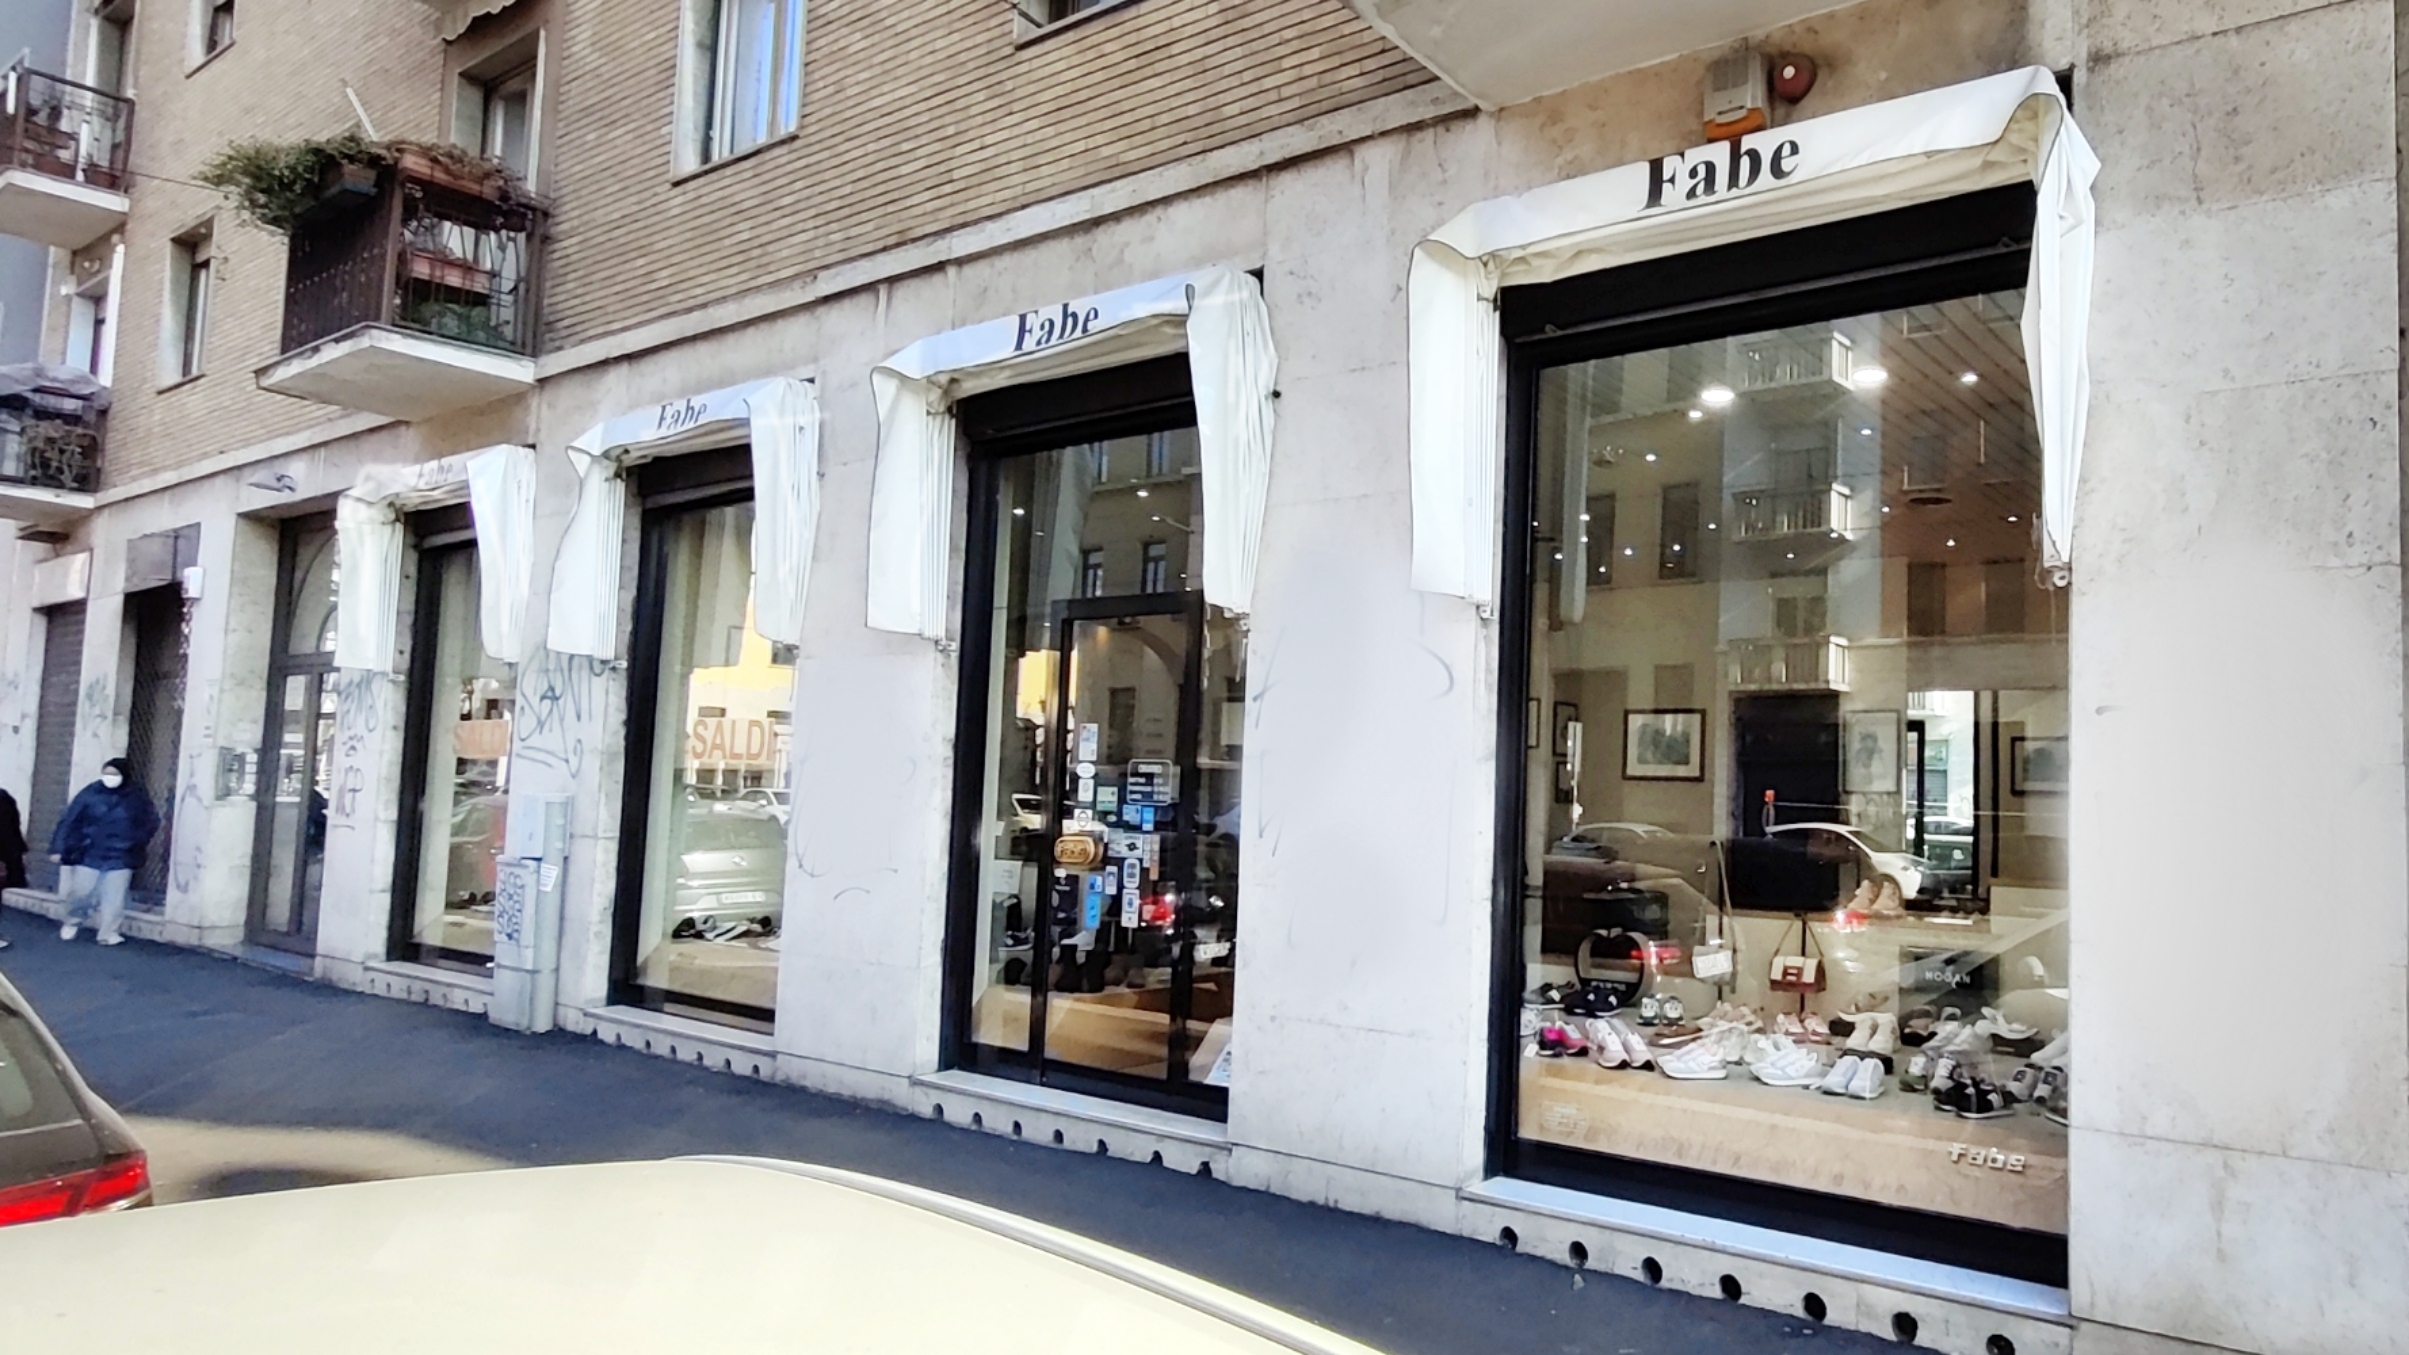 Negozio Doucal's Milano , polacchini mocassini e allacciate vista esterno del negozio ufficiale